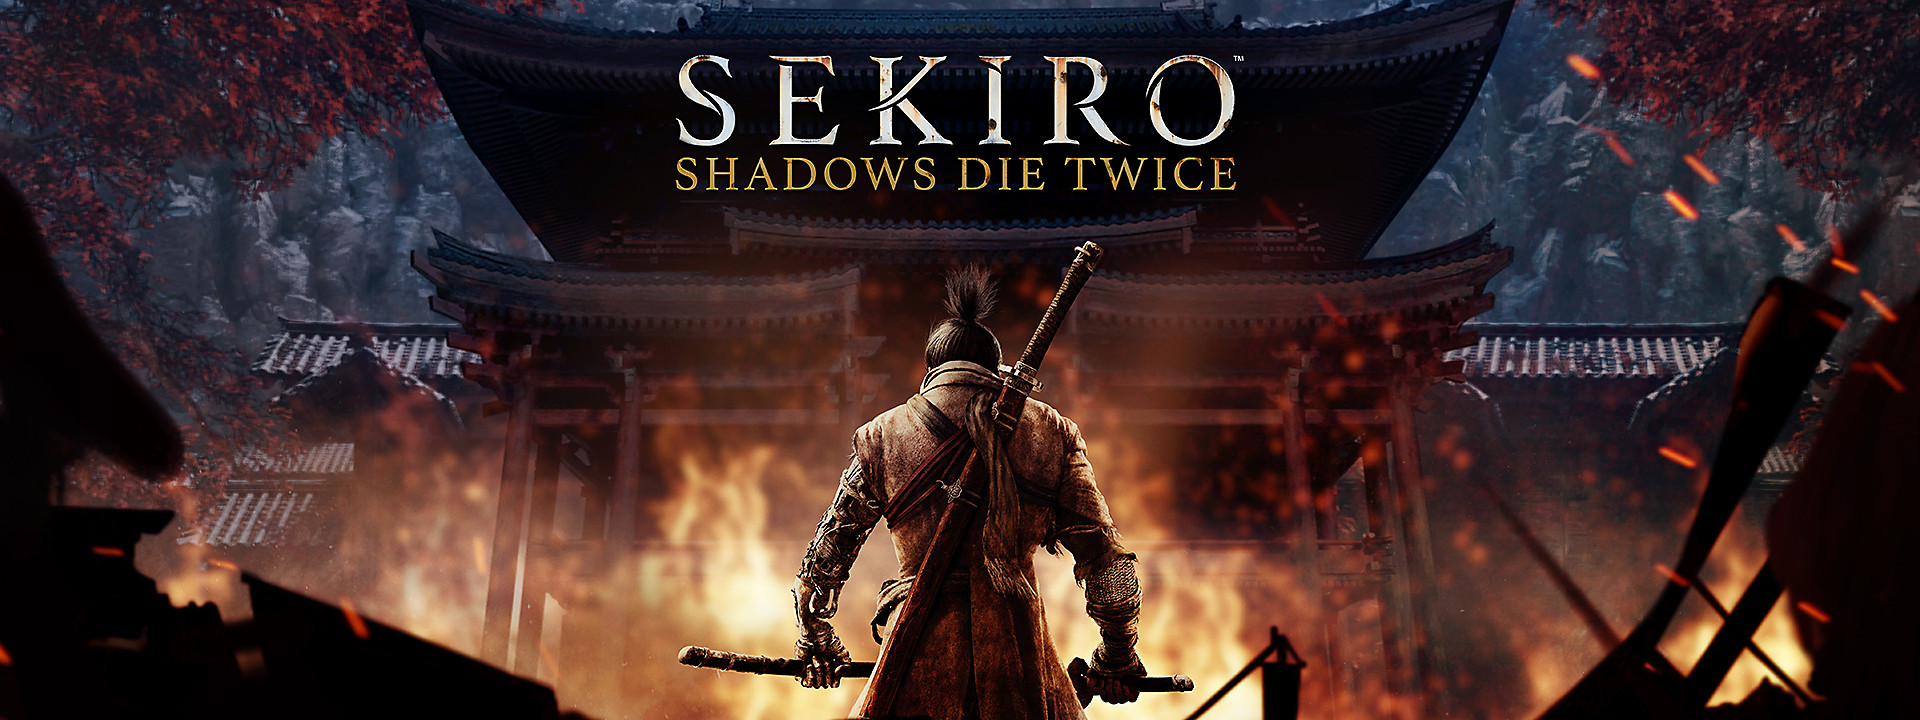 sekiro-shadows-die-twice-homepage-marquee-desktop-01-ps4-us-21mar19